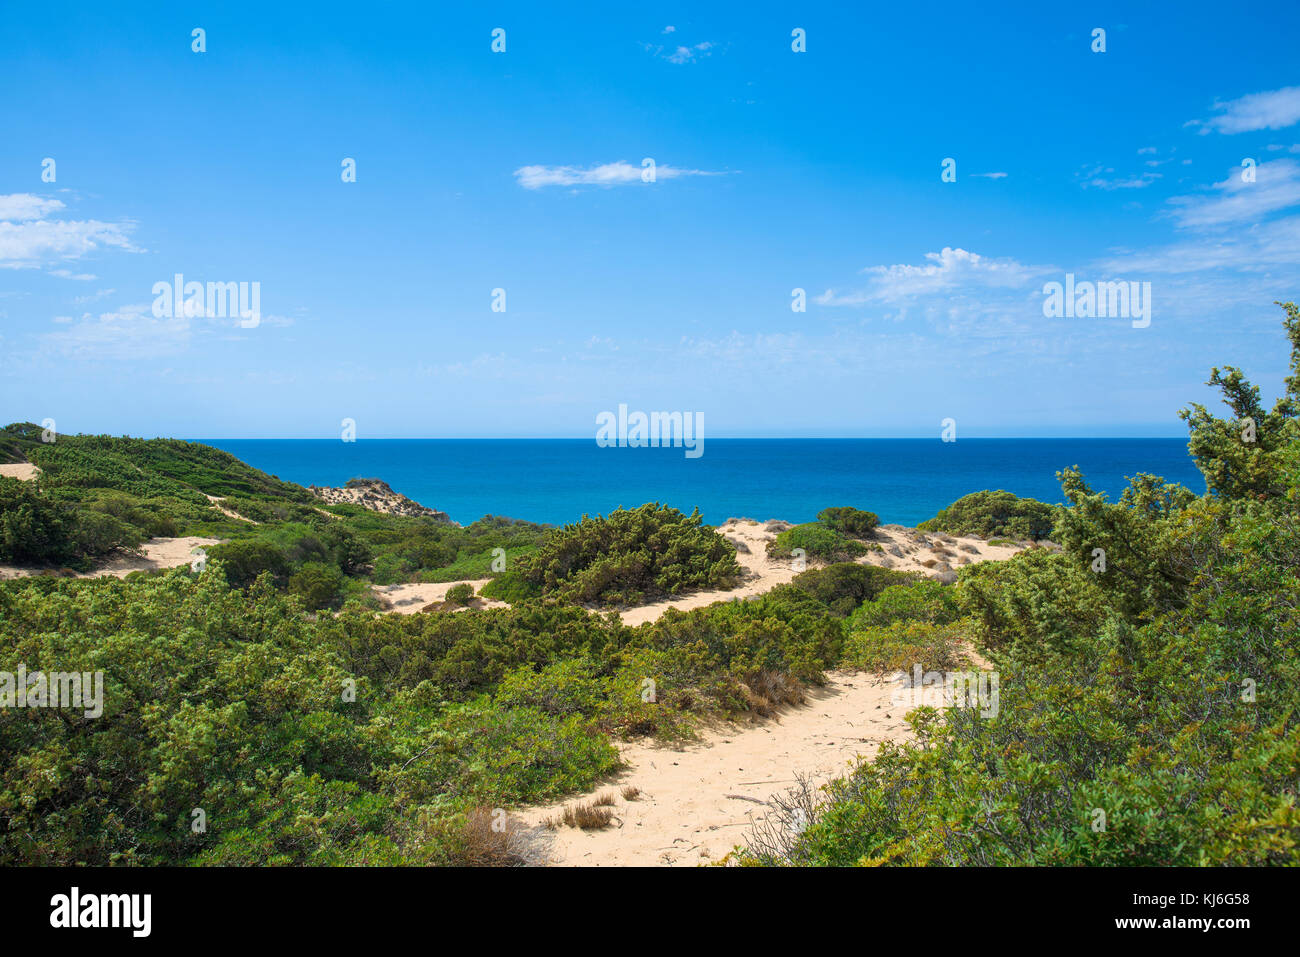 Ein Blick auf das Dünensystem von Piscinas in Sardinien, Italien, mit dem Mittelmeer im Hintergrund Stockfoto